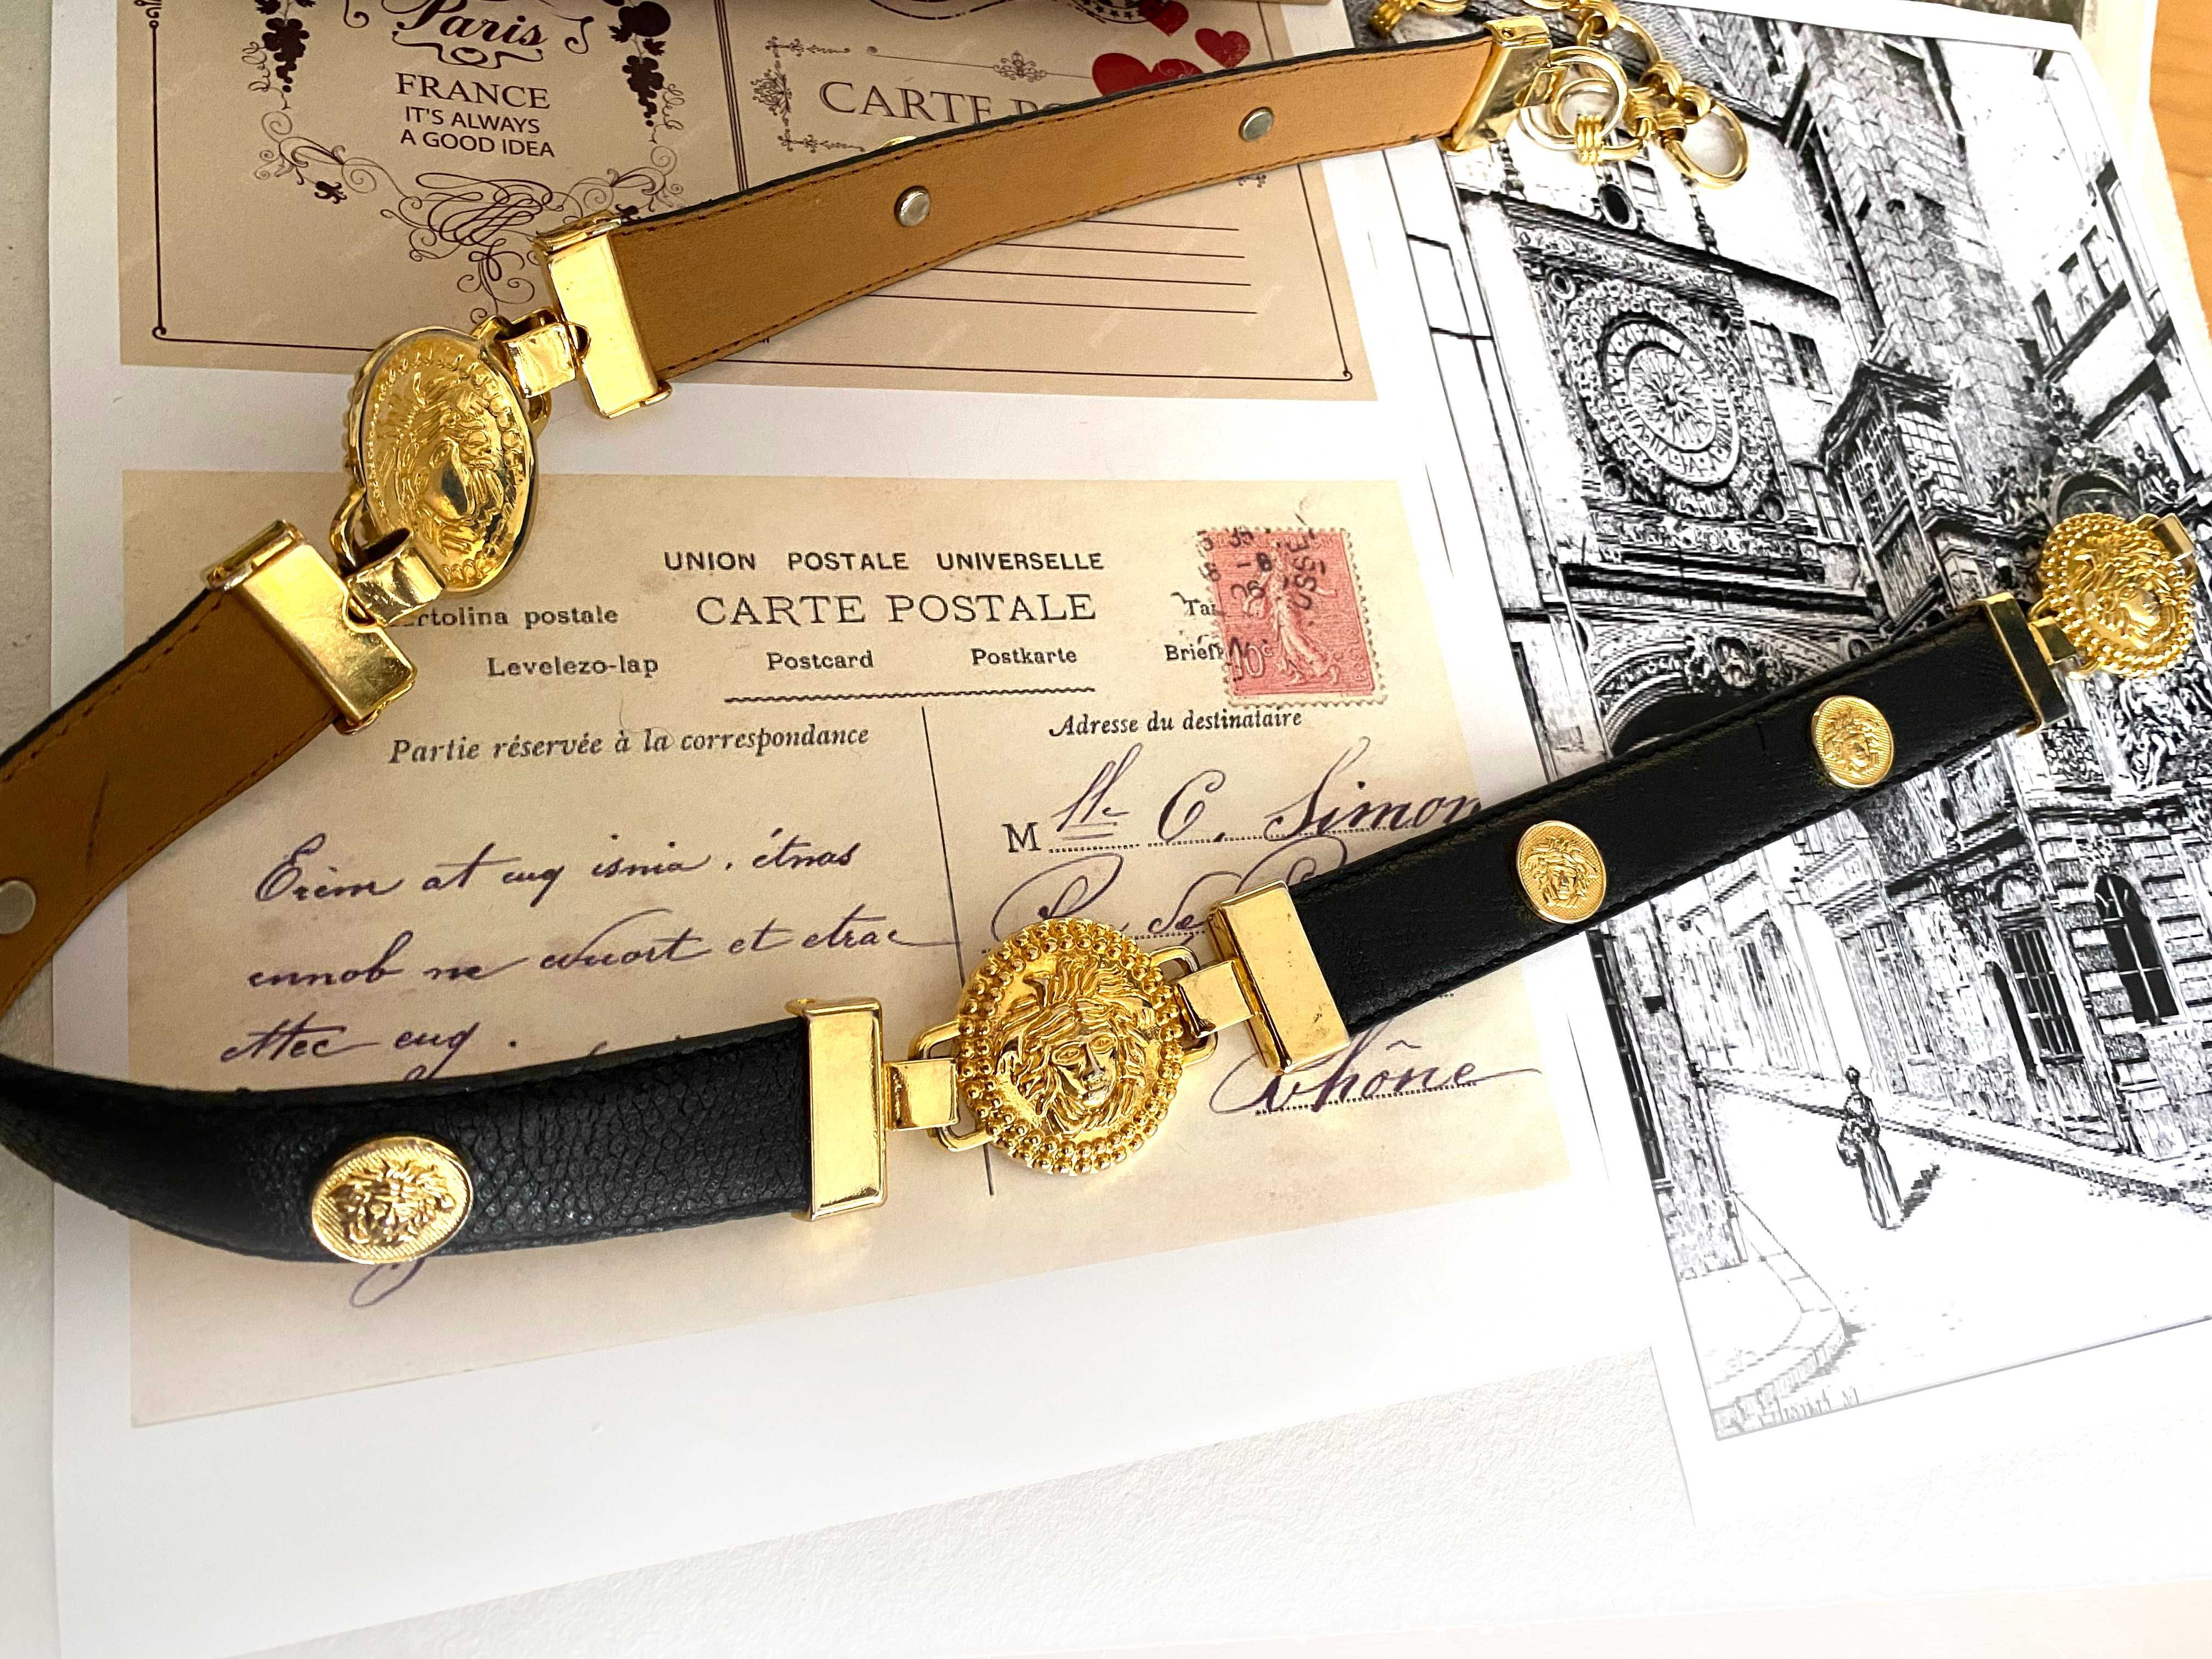 Curea vintage cu accesorii aurii model Versace